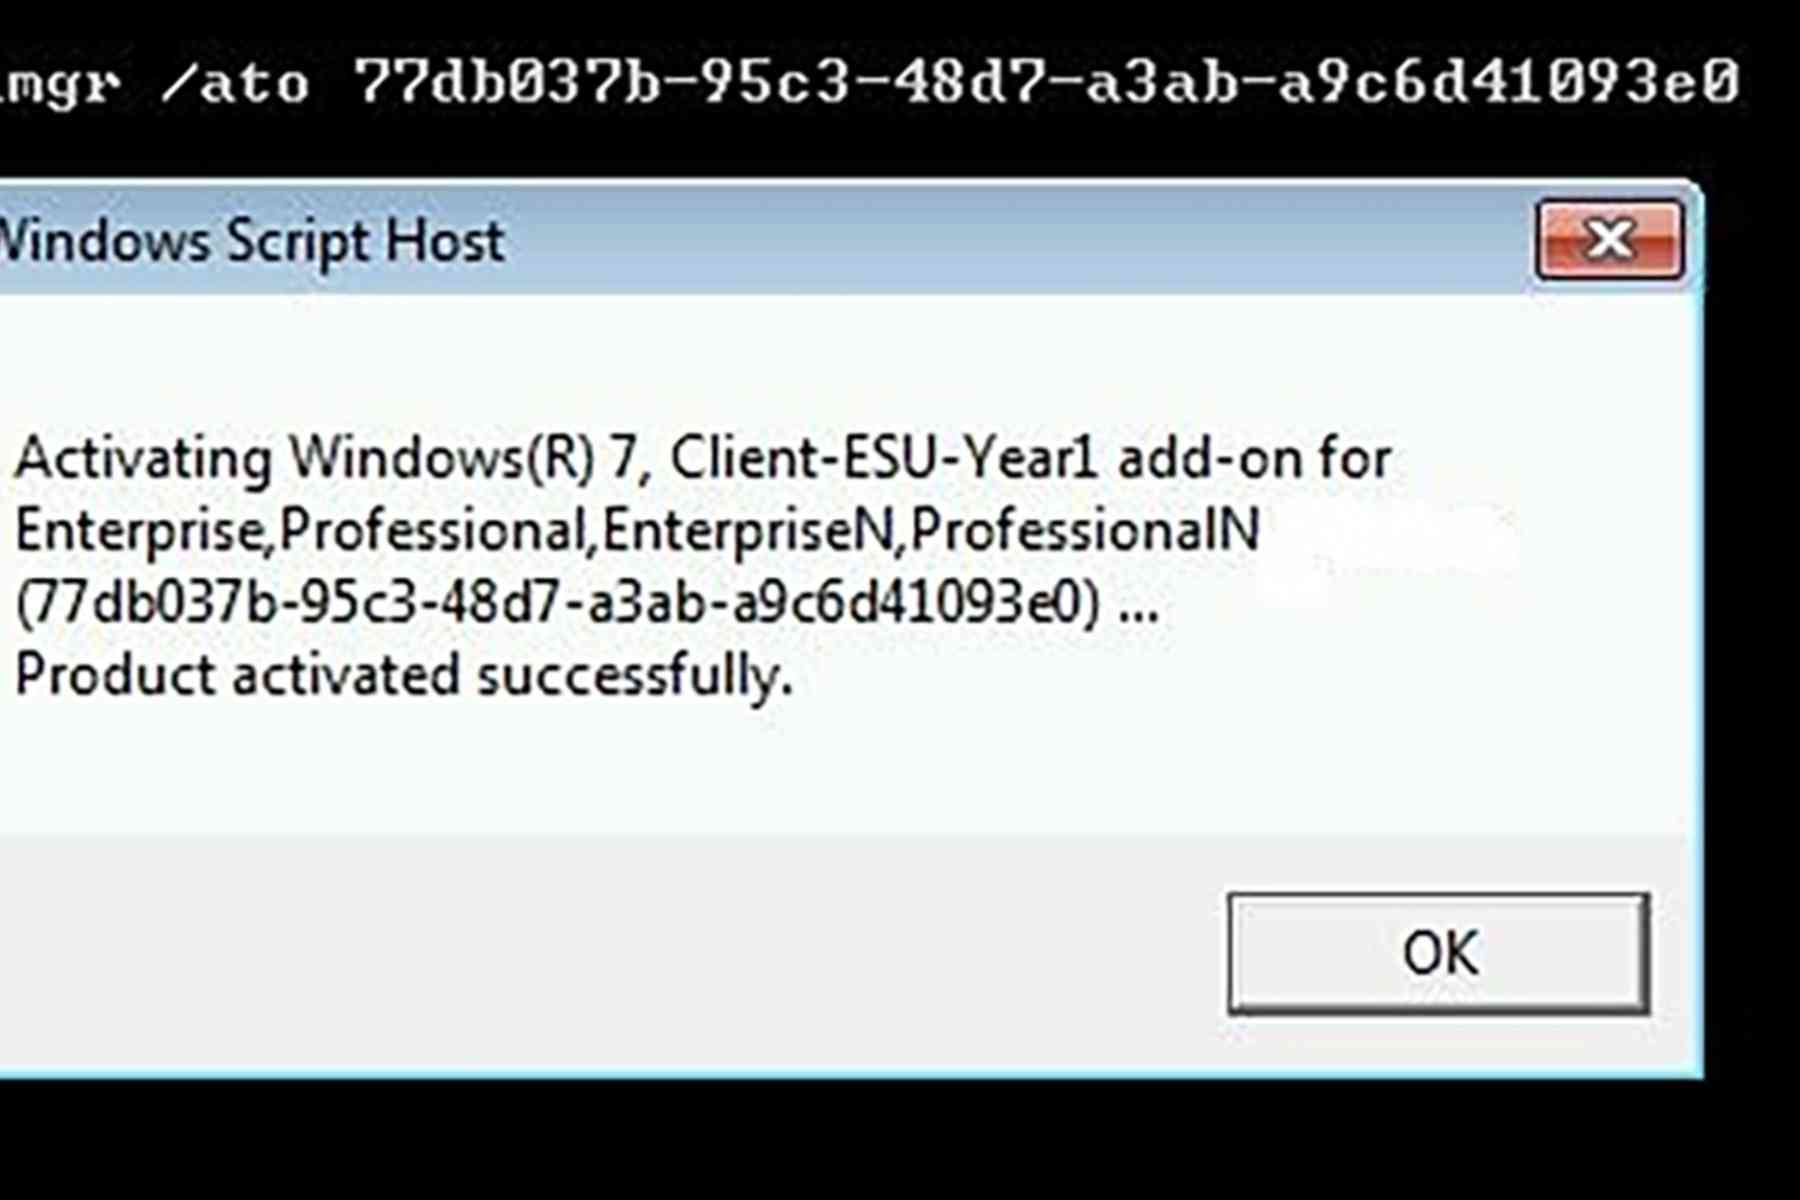 Windows 7 Extended Security Updates Esu Jetzt Verfügbar Software Express 6794